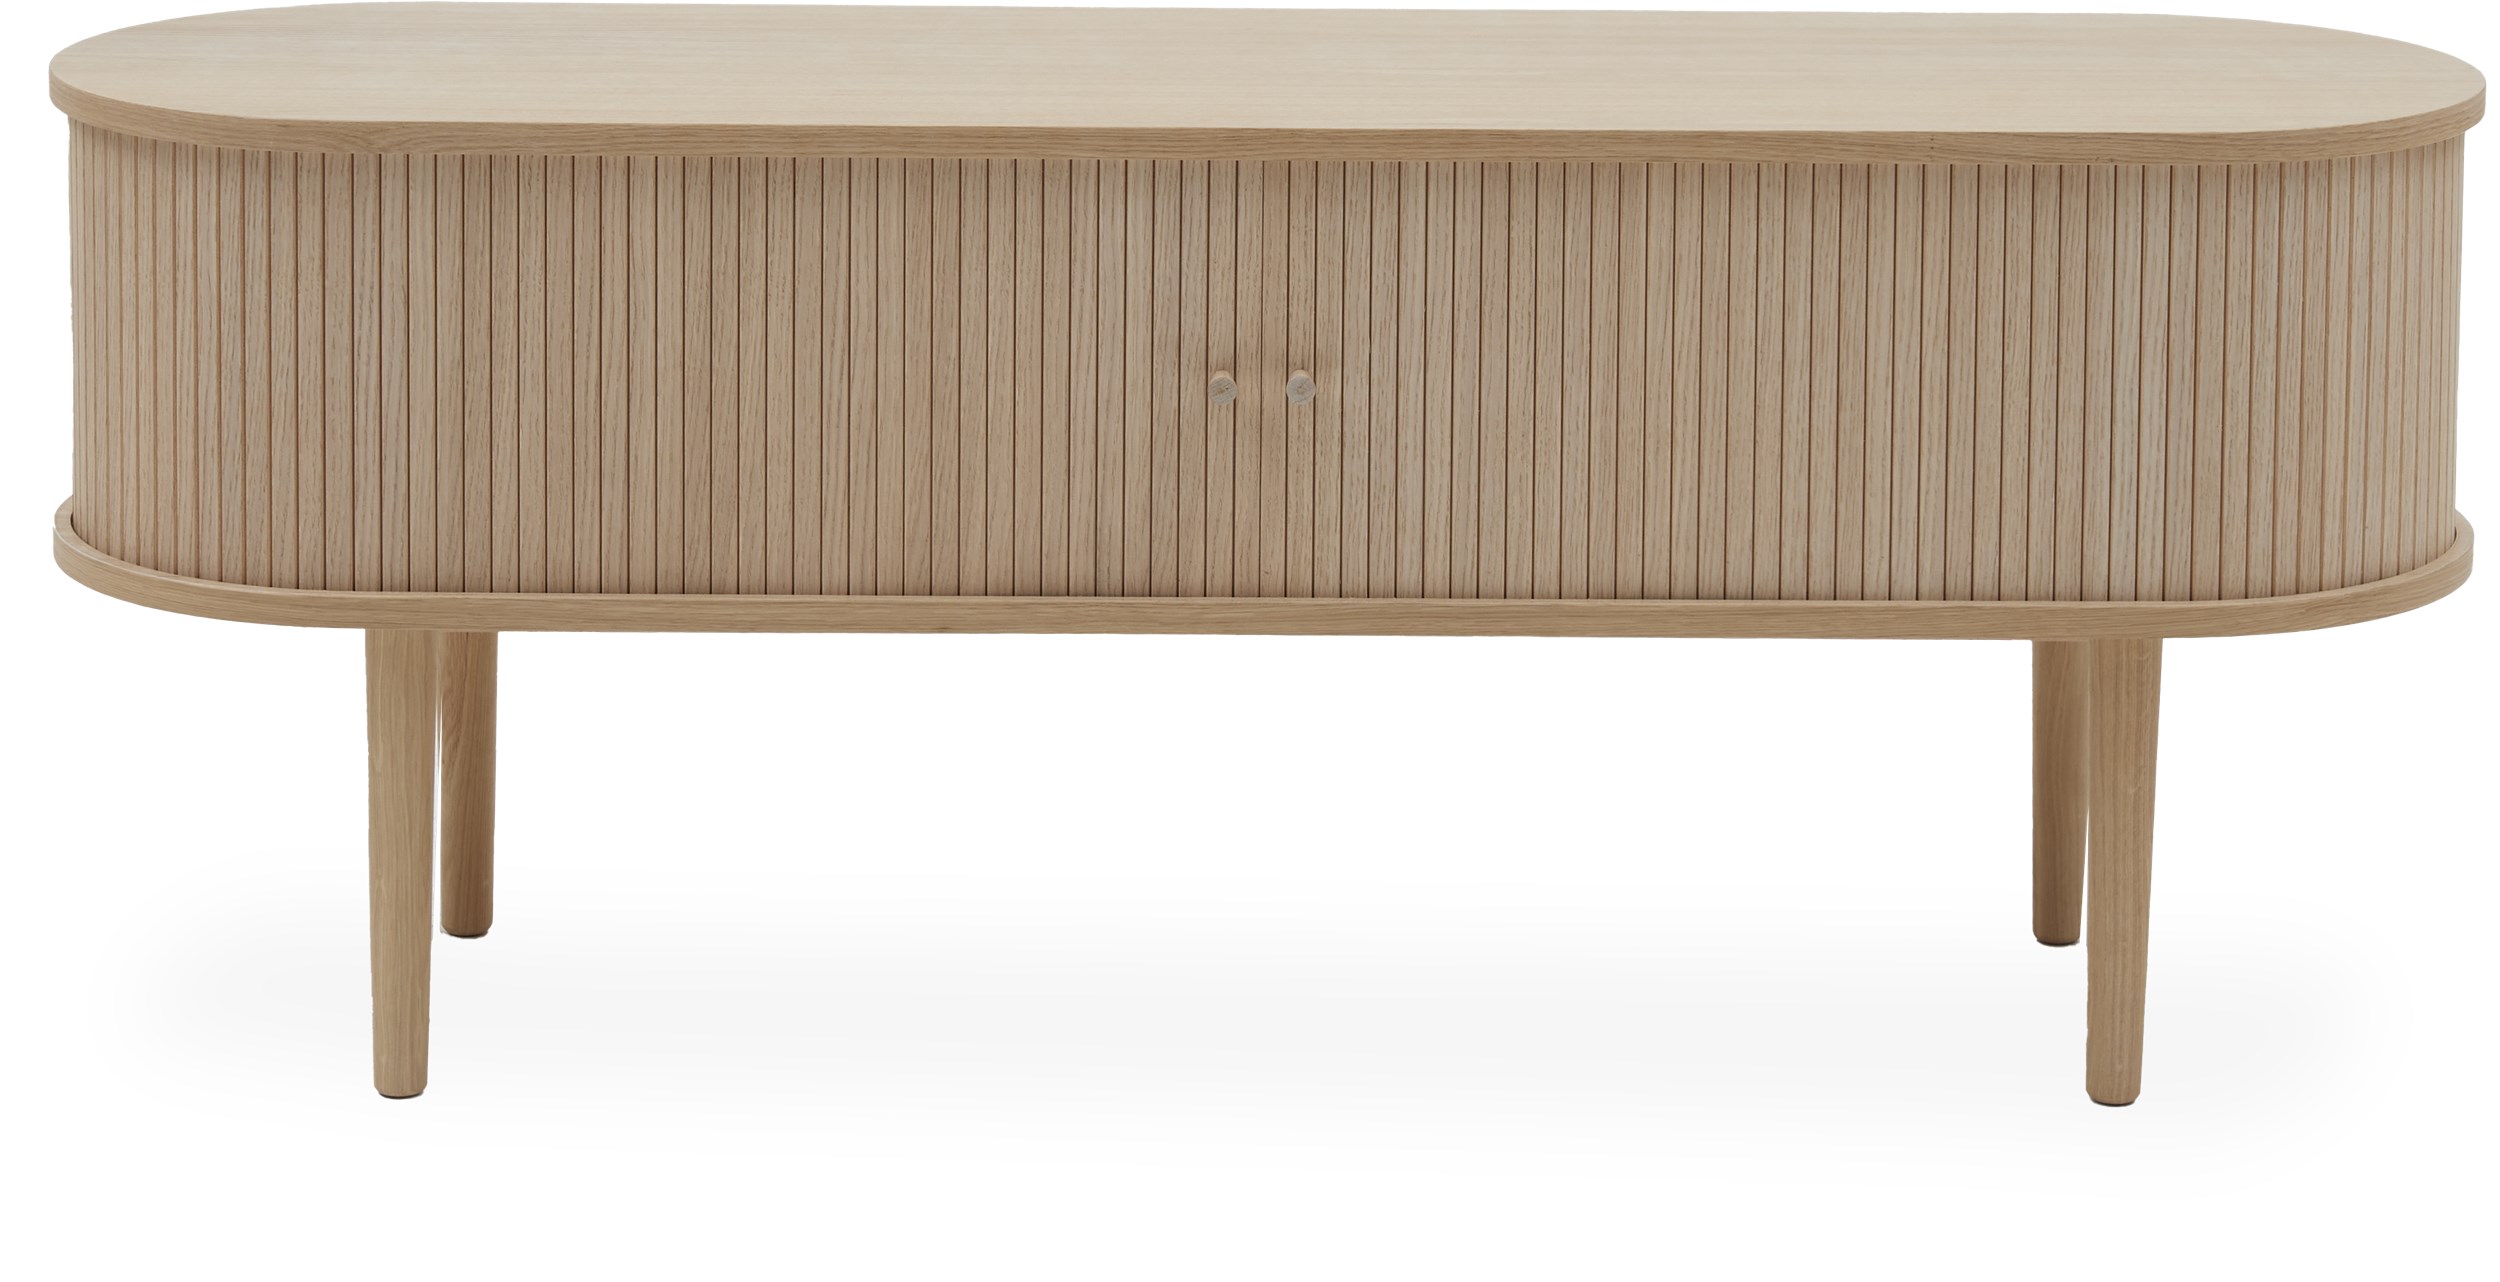 Focus TV-möbel - Stomme i vitpigmenterat, lackerat ekfaner och ben i massiv vitpigmenterad lackerad ek